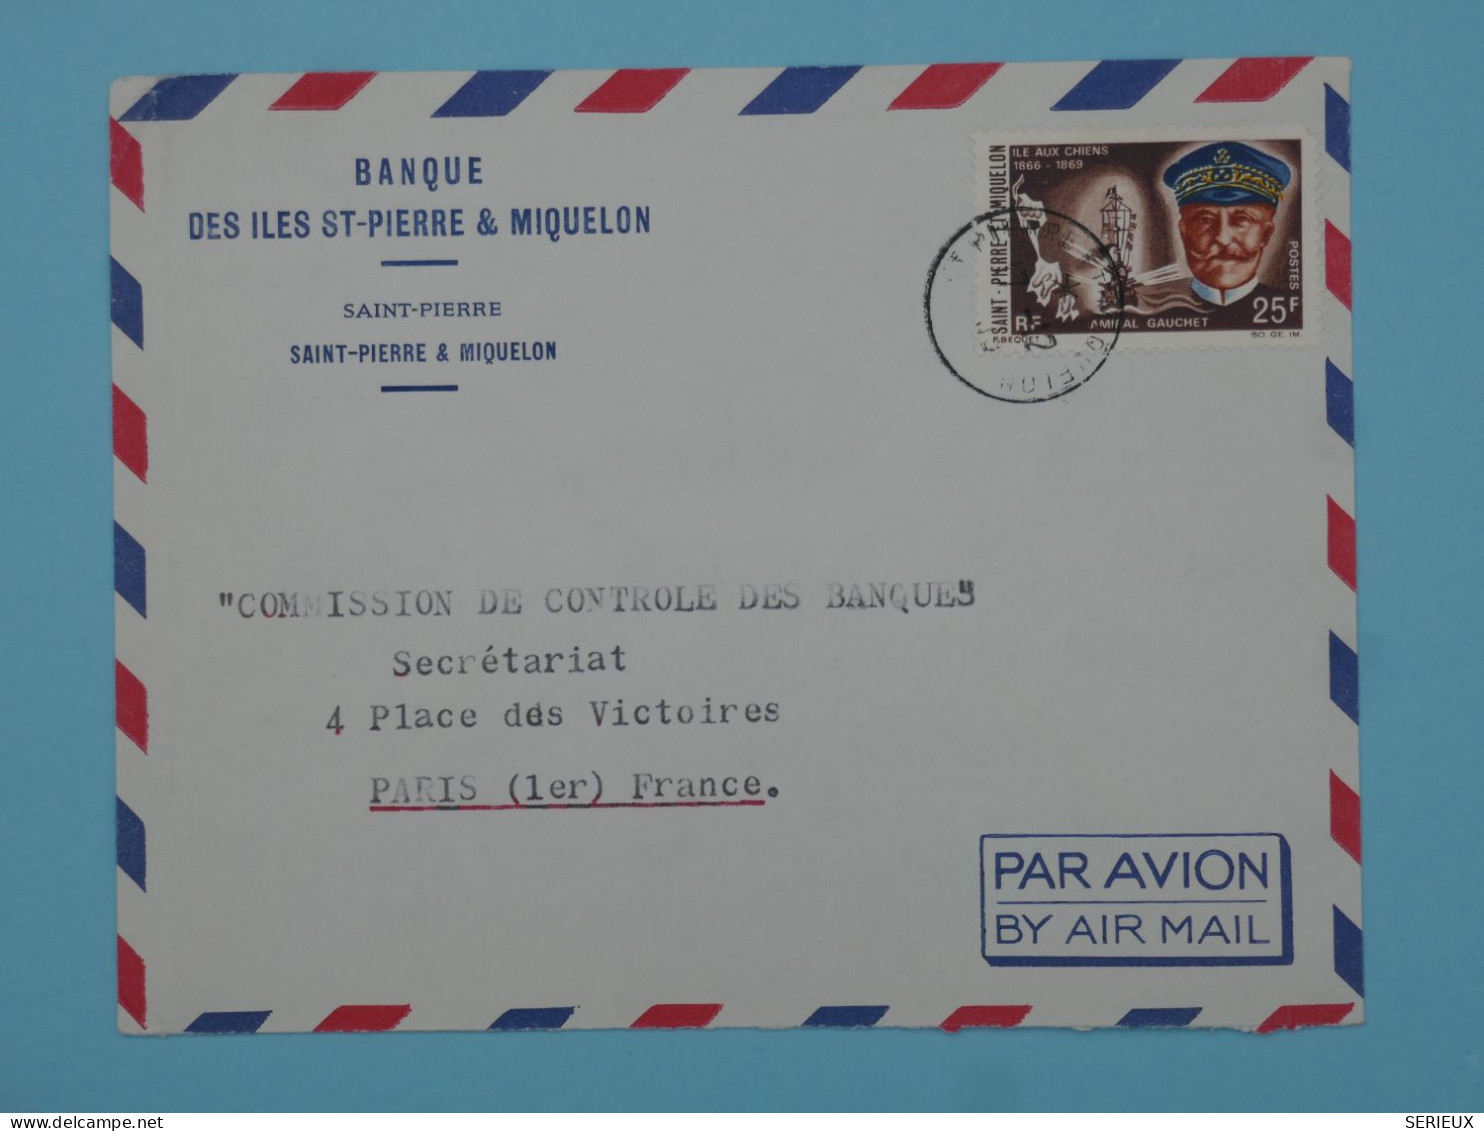 BT15  ST PIERRE & MIQUELON  BELLE LETTRE  1966 BANQUE  PAR AVION A PARIS  FRANCE ++AFF. PLAISANT +++ - Covers & Documents